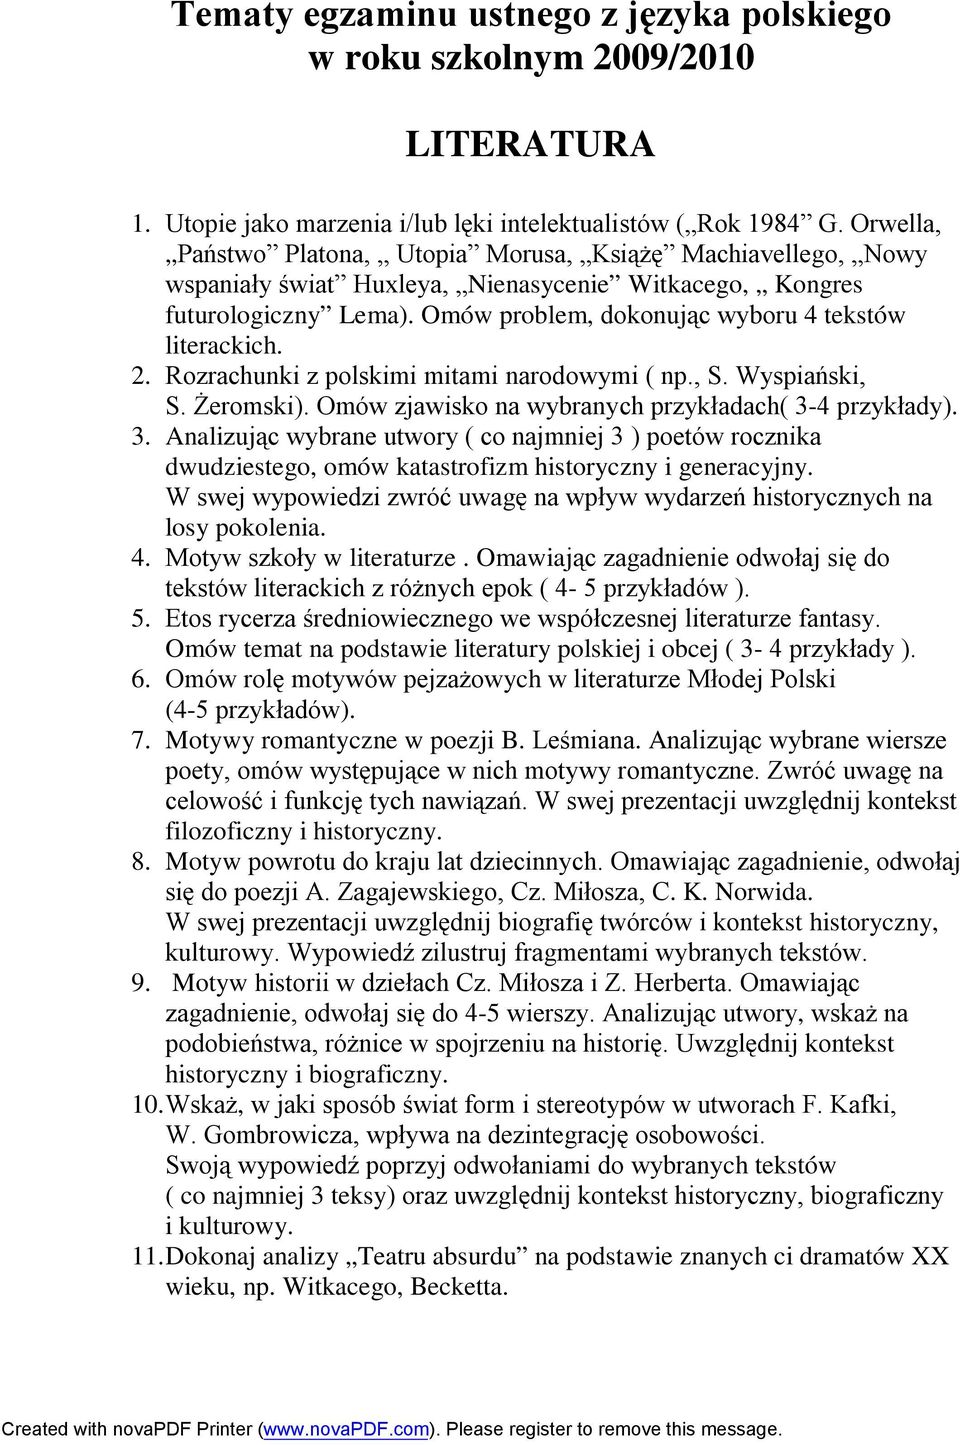 2. Rozrachunki z polskimi mitami narodowymi ( np., S. Wyspiański, S. Żeromski). Omów zjawisko na wybranych przykładach( 3-